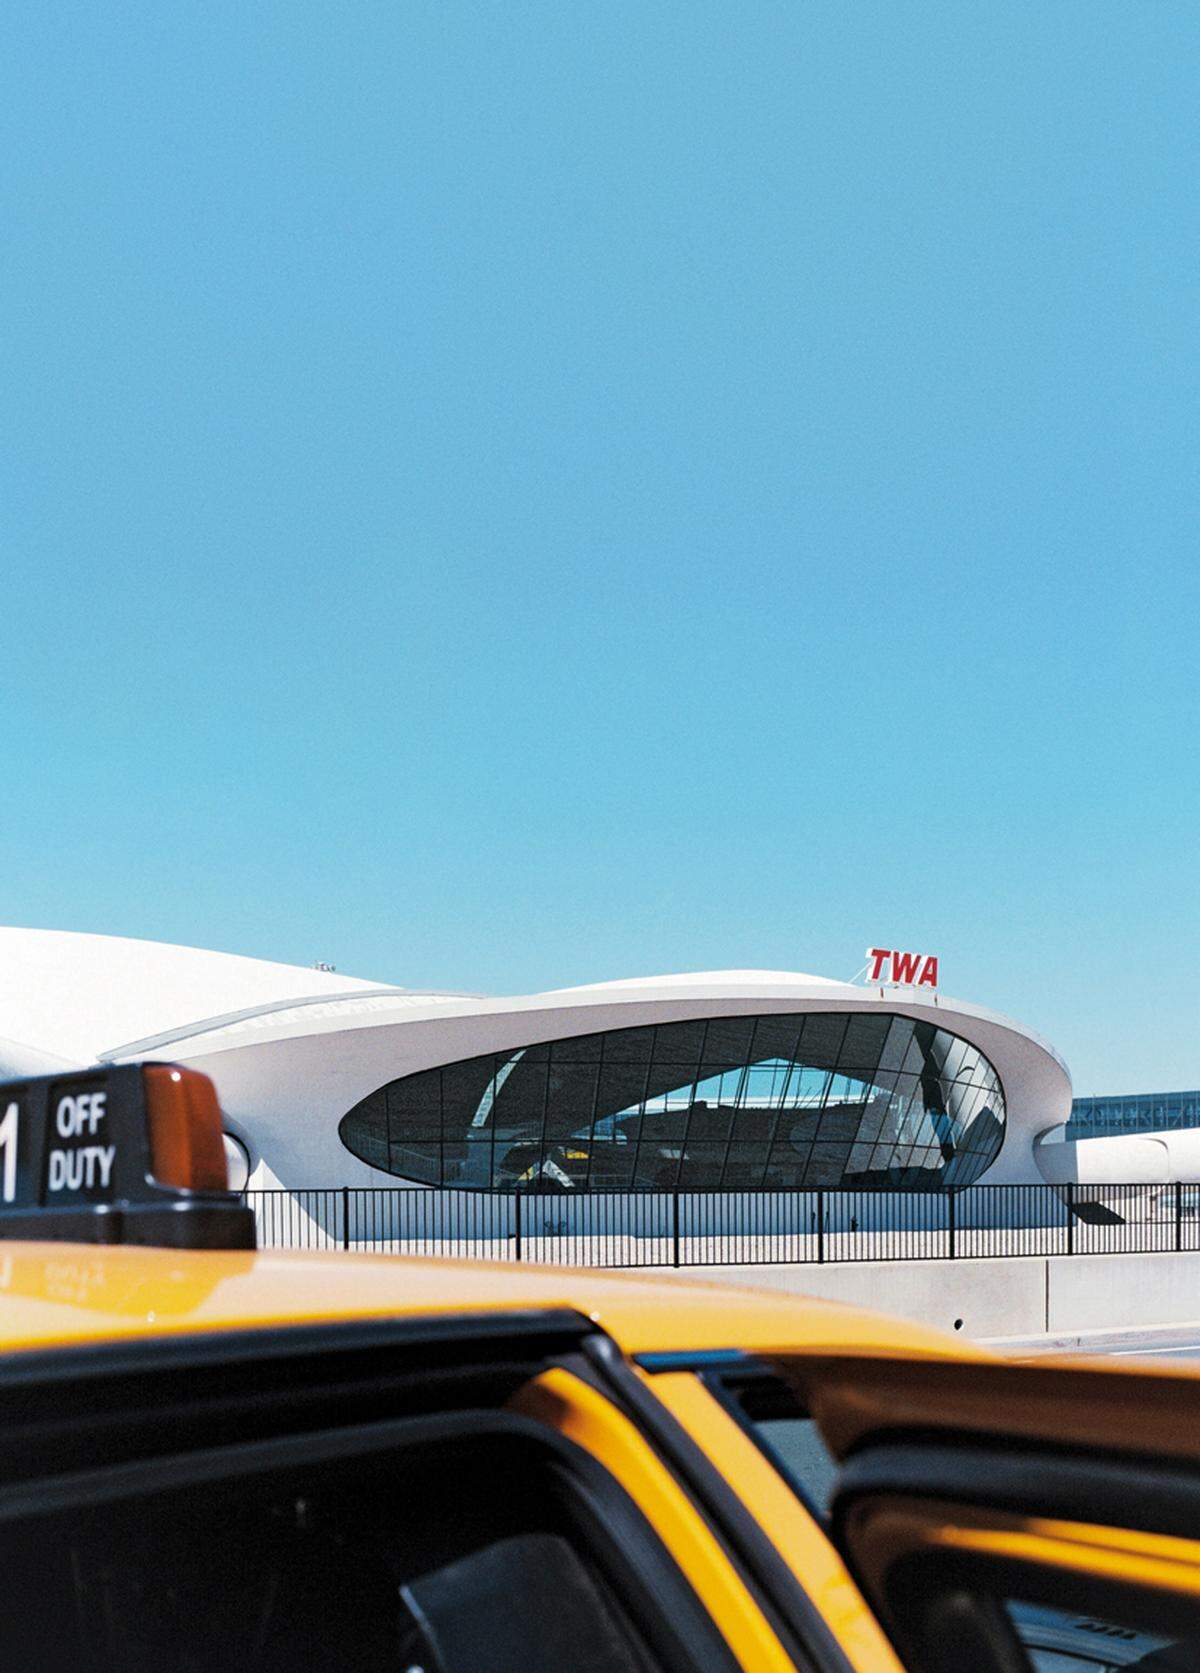 Eine Architekturikone der 1960er-Jahre: Der TWA-Terminal am JFK-Flughafen in New York, als das Fliegen noch glamourös war und verheißungsvoll Lust auf die Zukunft machte. Auch das manifestierte sich in dem Gebäude des finnischen Architekten Eero Saarinen. Die Gegenwart des Flugverkehrs kann das Terminal heute nicht mehr schultern, seit 2001 ist es außer Betrieb